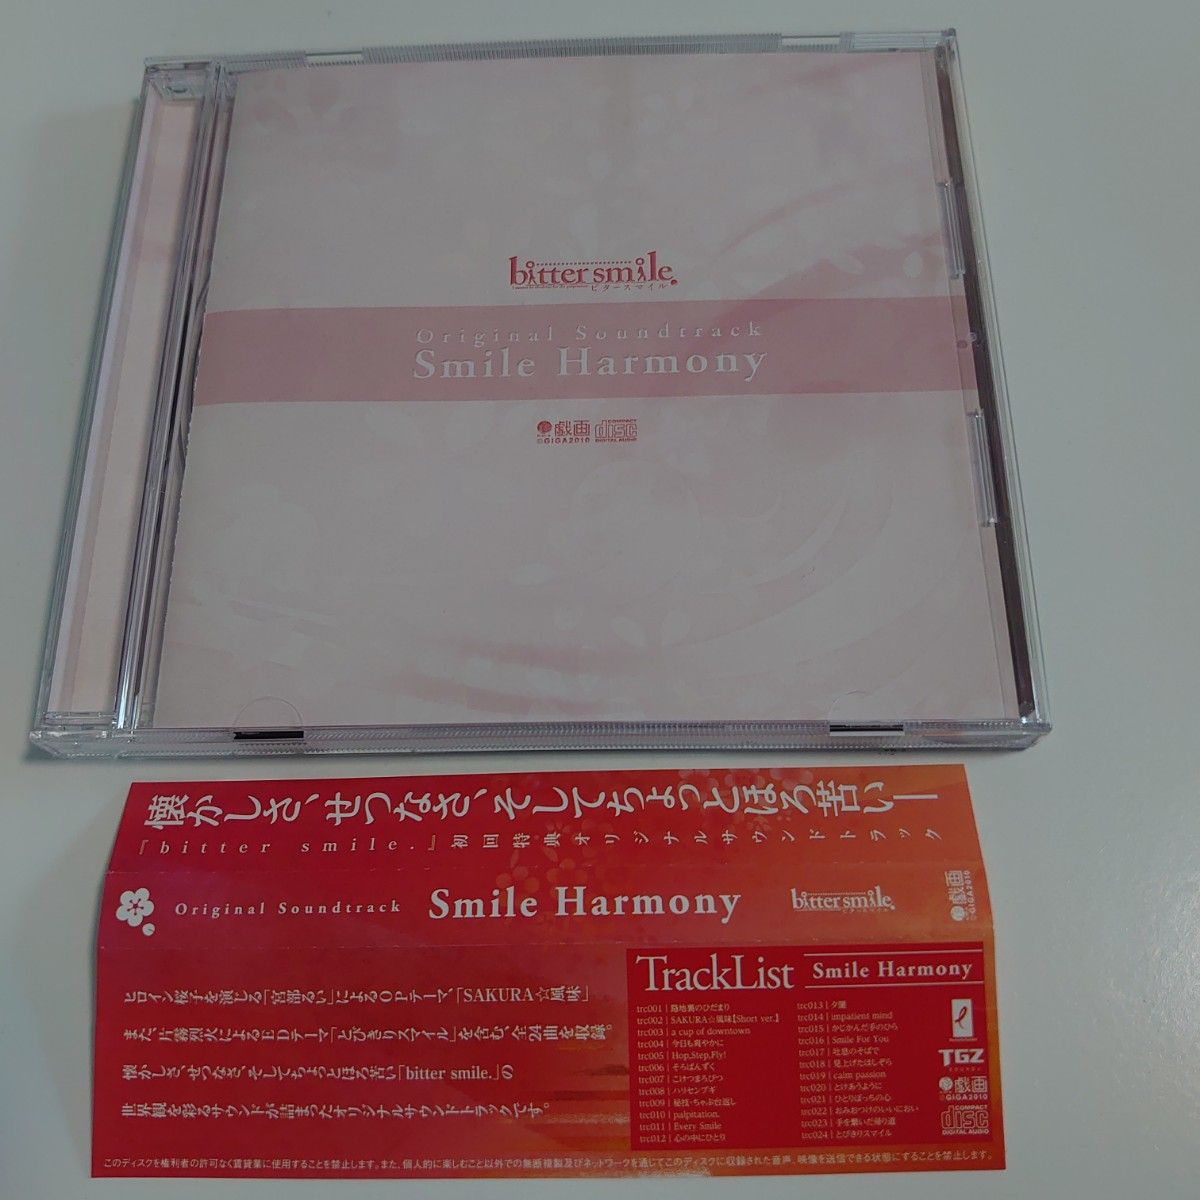 【サントラCD】「bitter smile.」初回特典オリジナルサウンドトラック「Smile Harmony」戯画